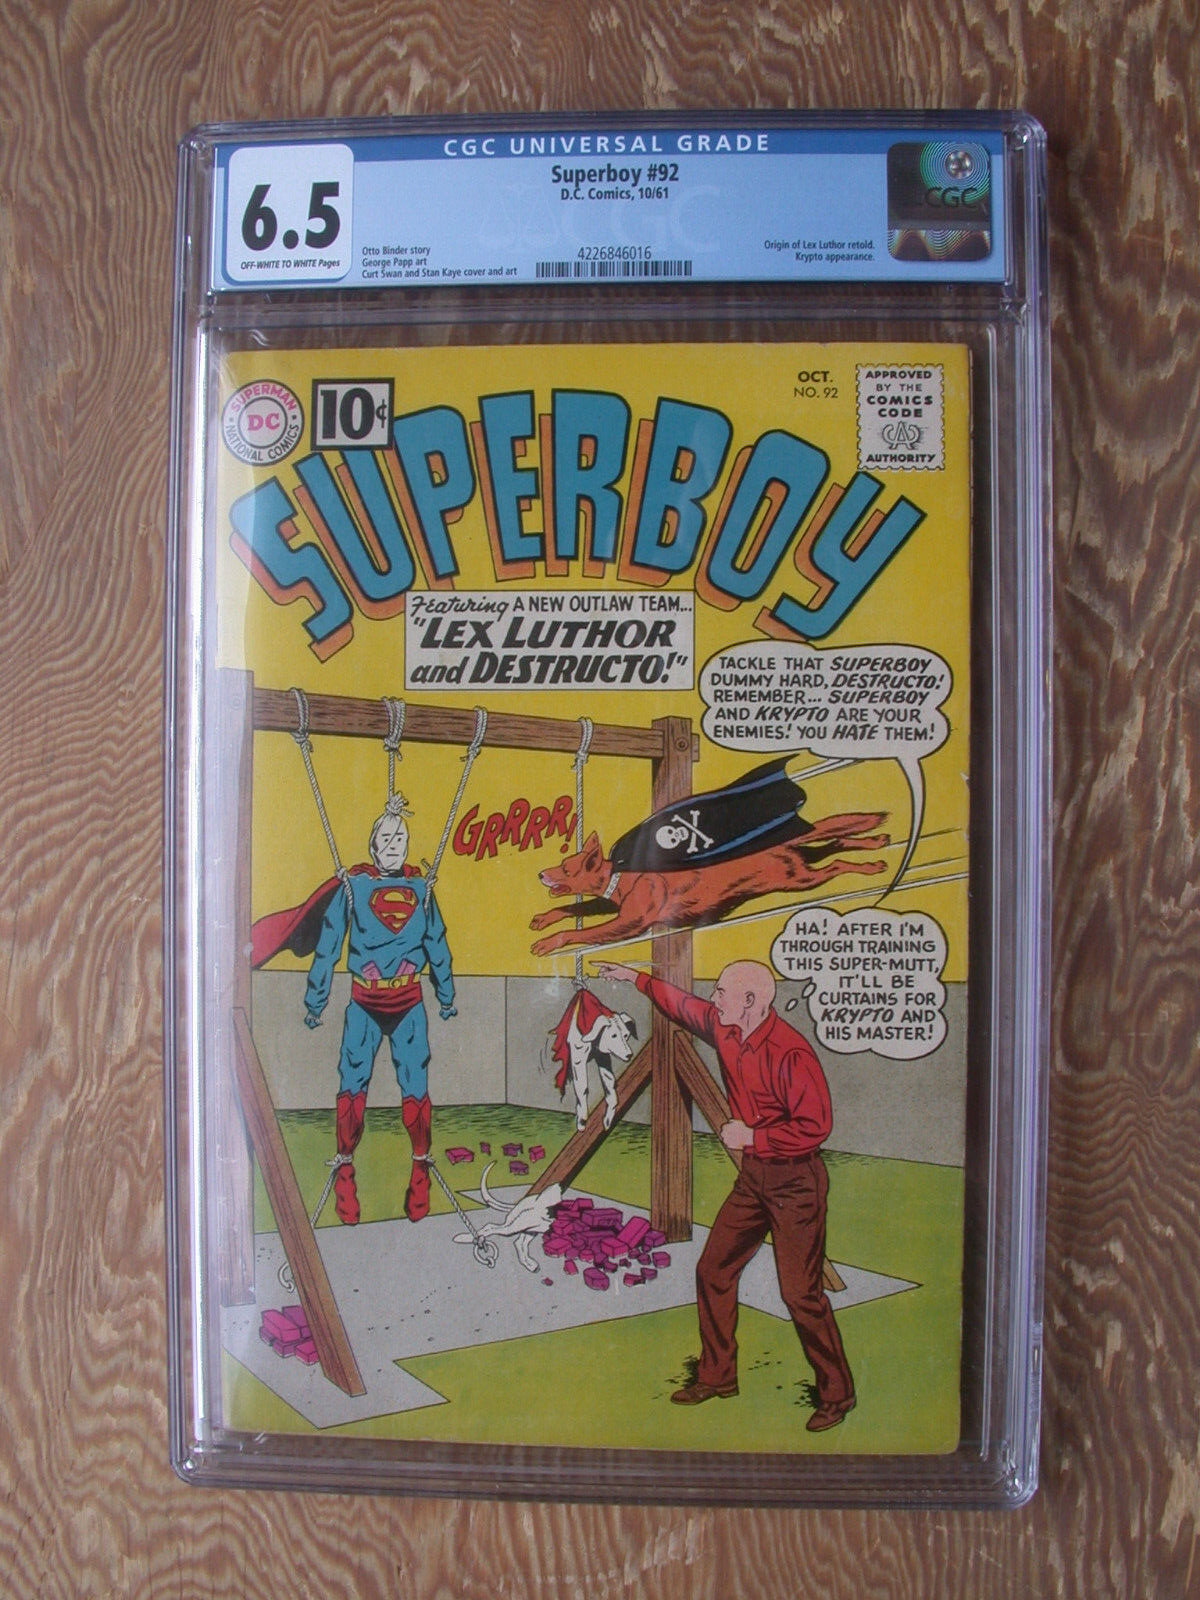 Superboy #92  CGC 6.5  Origin of Lex Luthor retold   1961